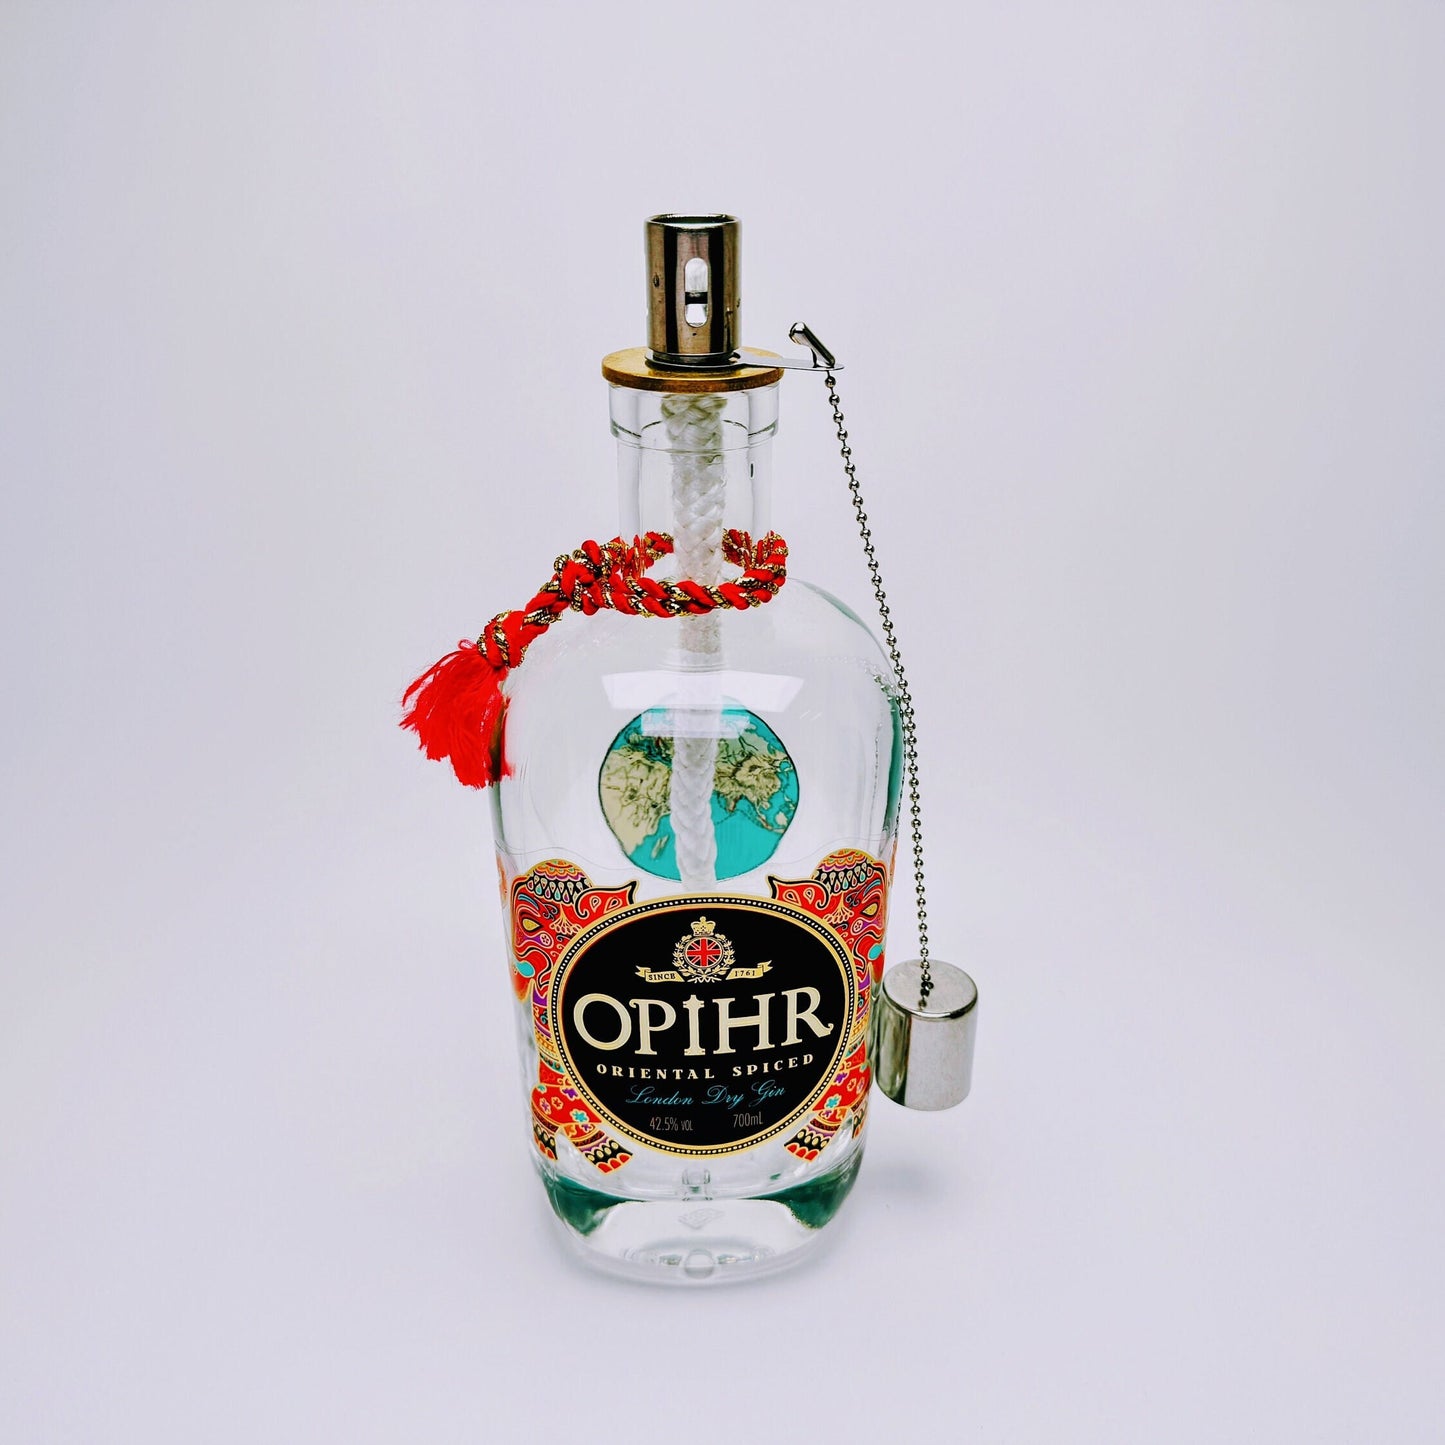 Gin Öllampe "Opihr" | Handgemachte Öllampe aus Opihr Gin Flaschen | Upcycling | Handgefertigt | Individuell | Geschenk | Deko | H:24cm